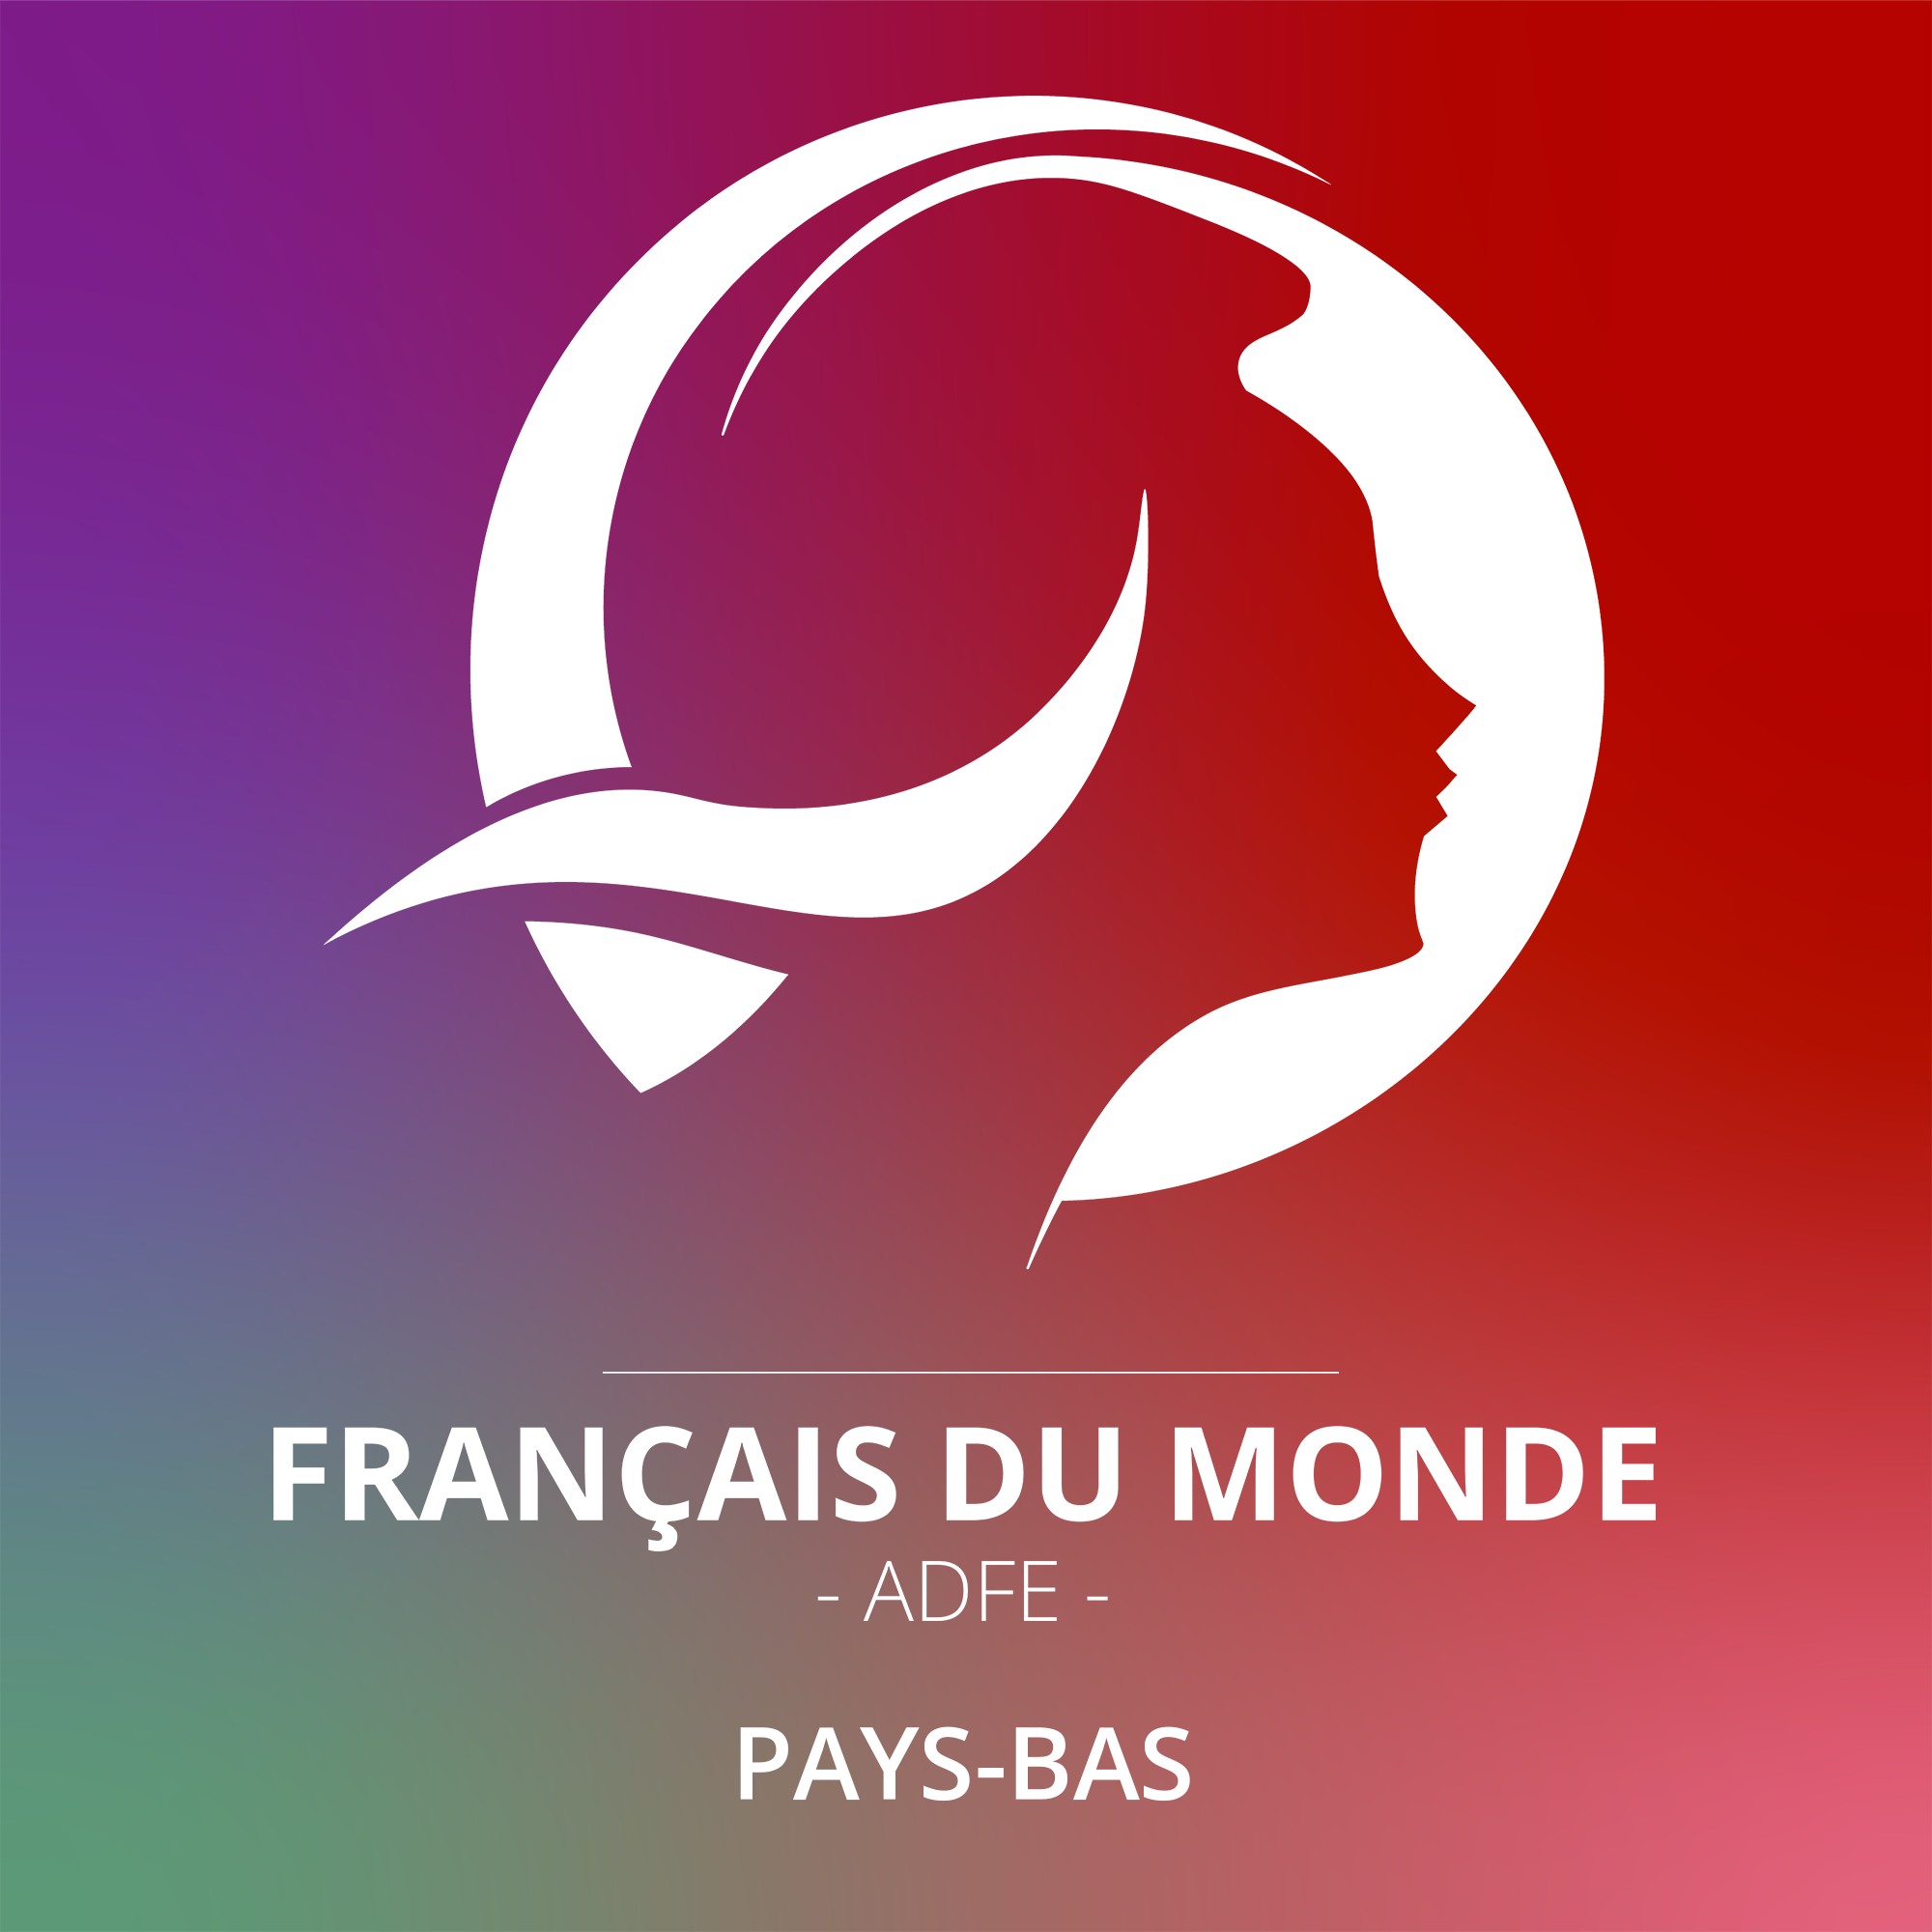 Français du monde - ADFE PAYS-BAS